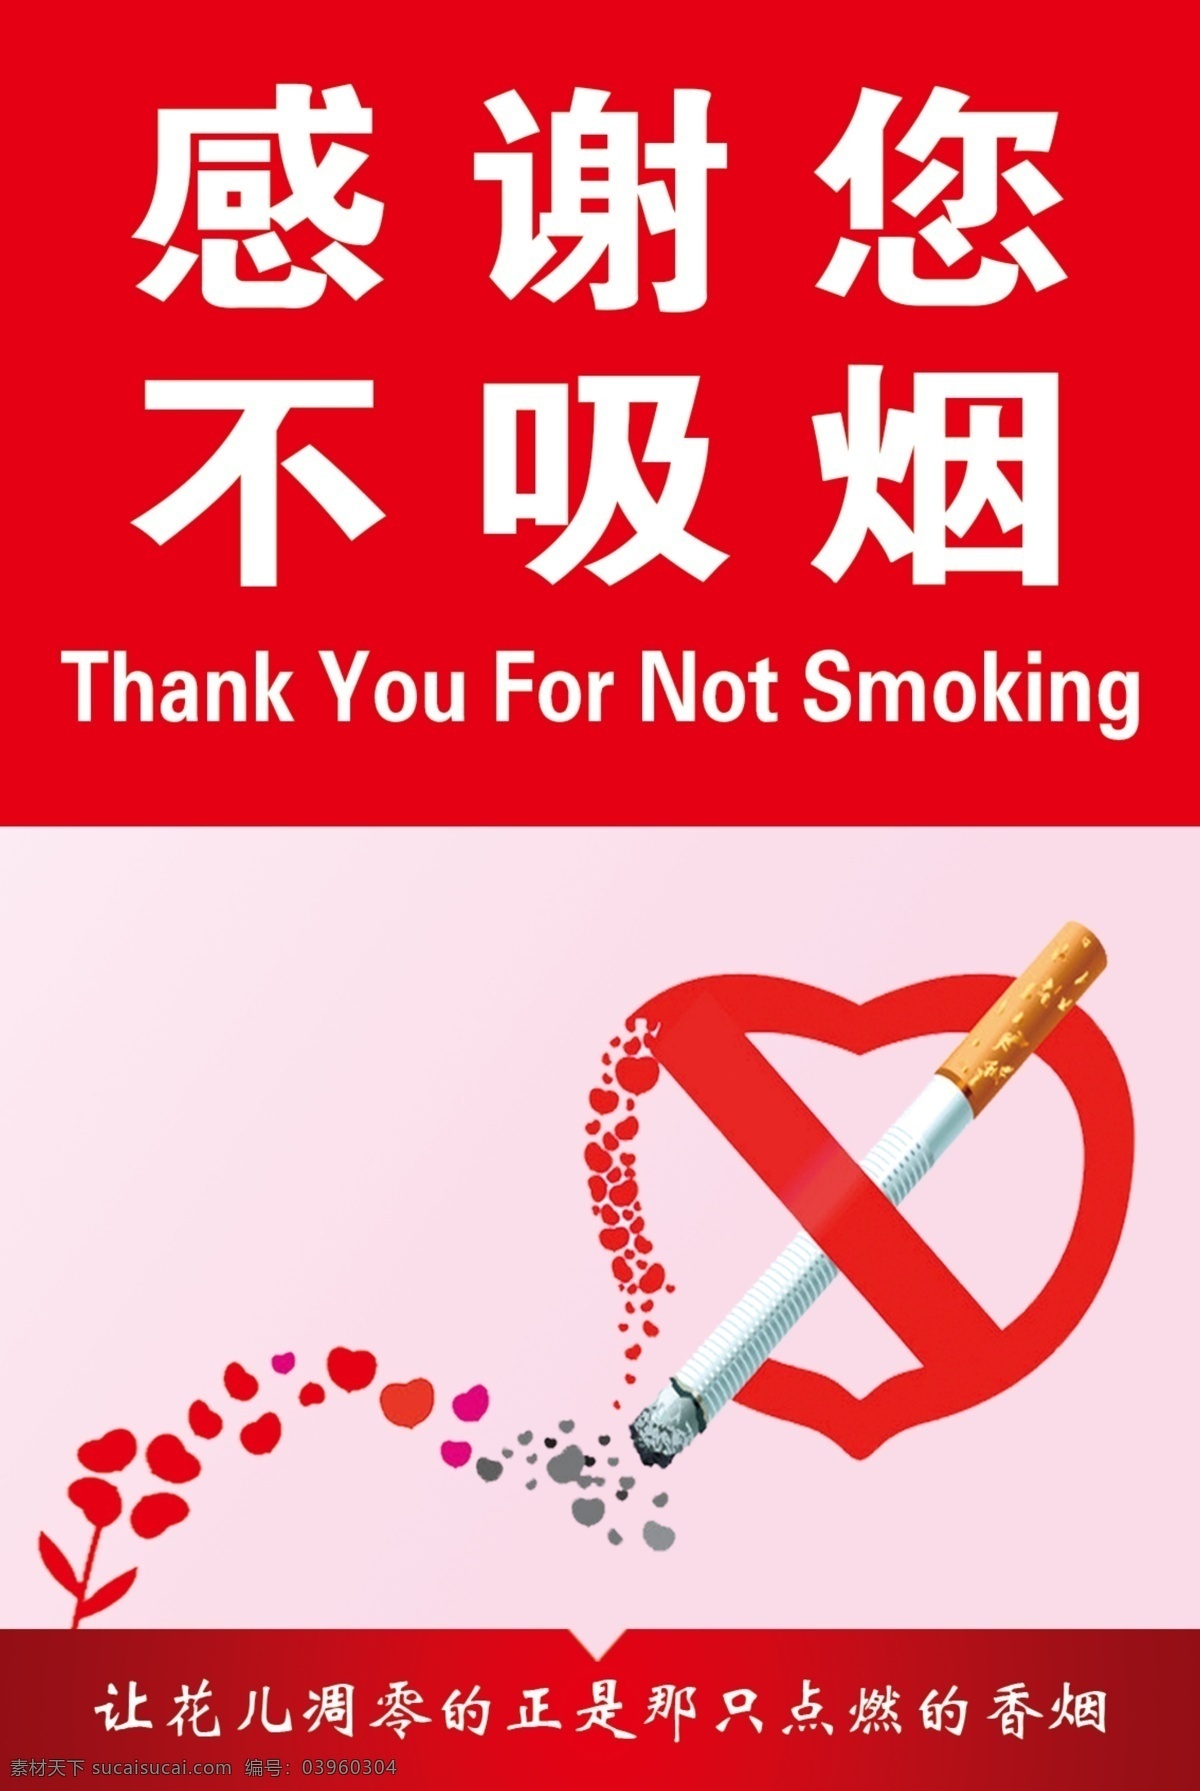 感谢不吸烟 请勿吸烟 展板模板 卫生院 医院禁止吸烟 不吸烟 感谢您不吸烟 桃心 心形 小心型 小草 烟 花儿凋零